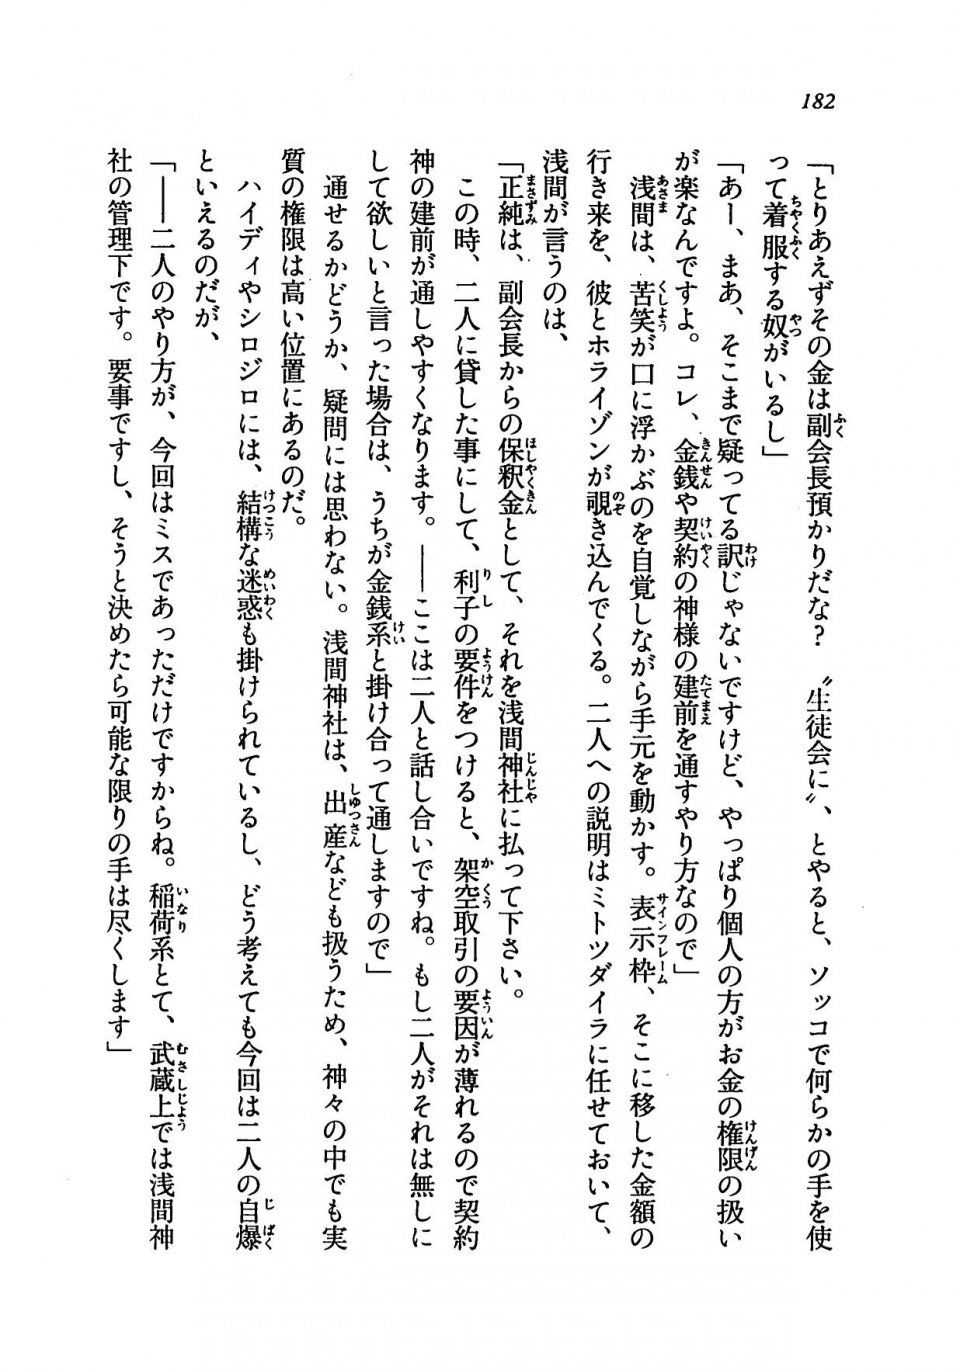 Kyoukai Senjou no Horizon LN Vol 19(8A) - Photo #182